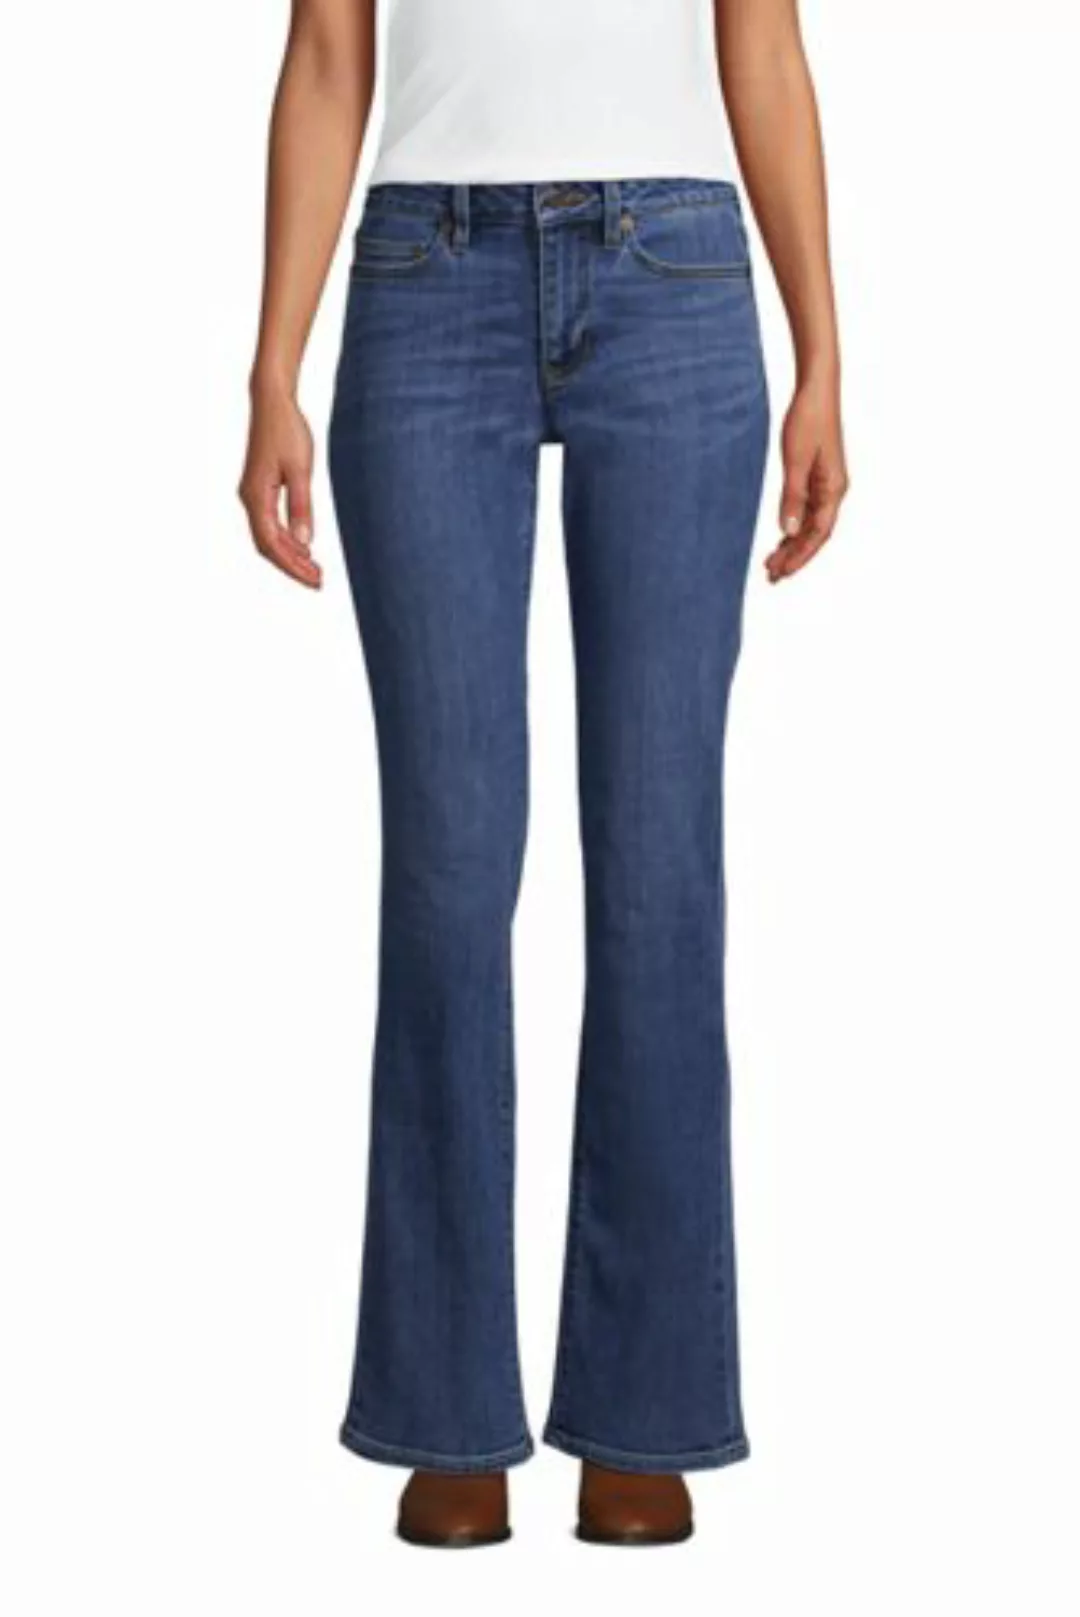 Bootcut Öko-Jeans Mid Waist, Damen, Größe: 38 30 Normal, Blau, Elasthan, by günstig online kaufen